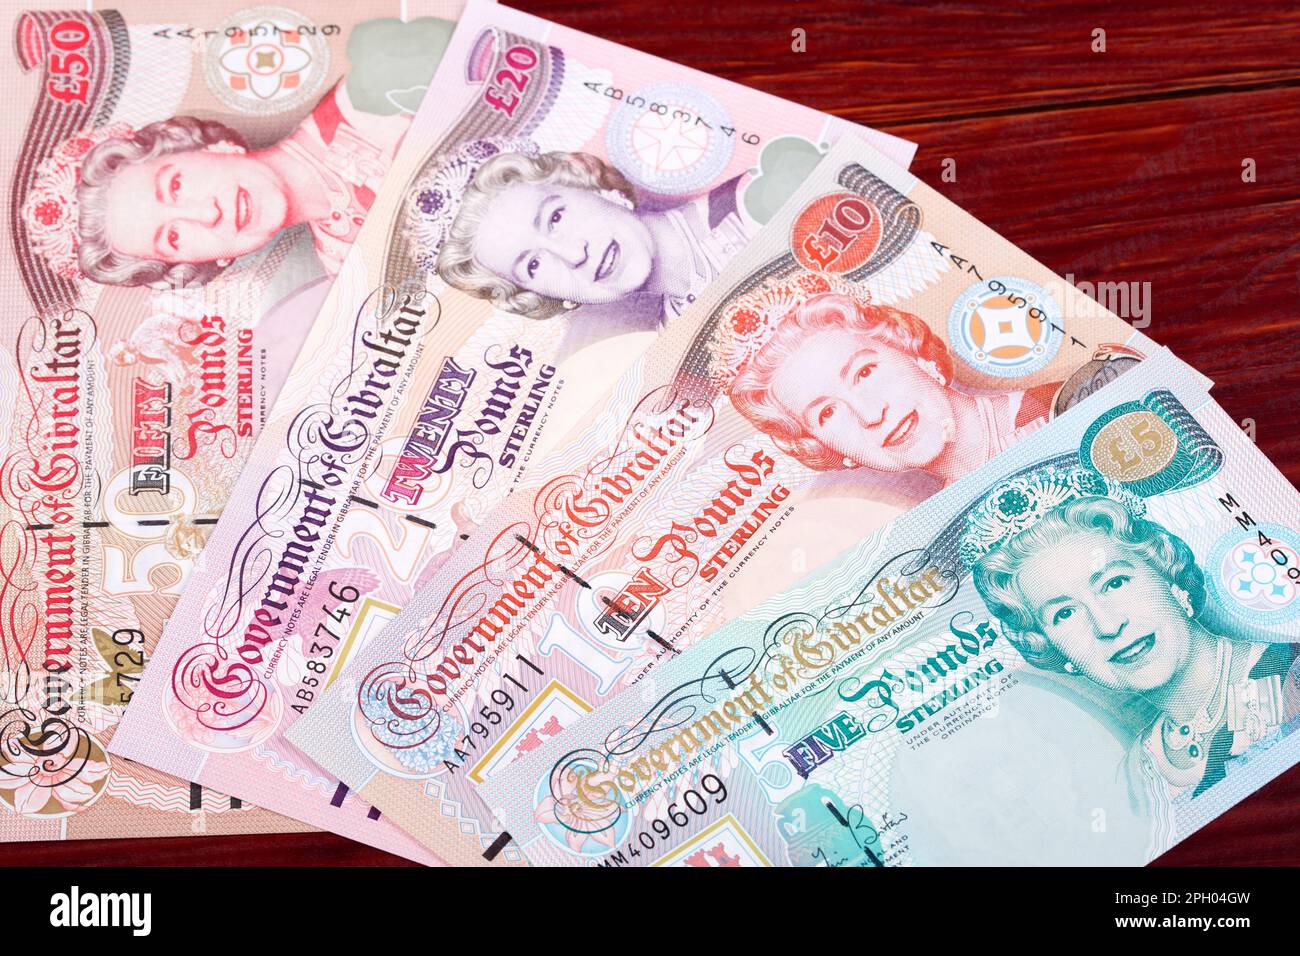 Gibraltar-Geld - Pfund - ältere Serie, ein geschäftlicher Hintergrund Stockfoto